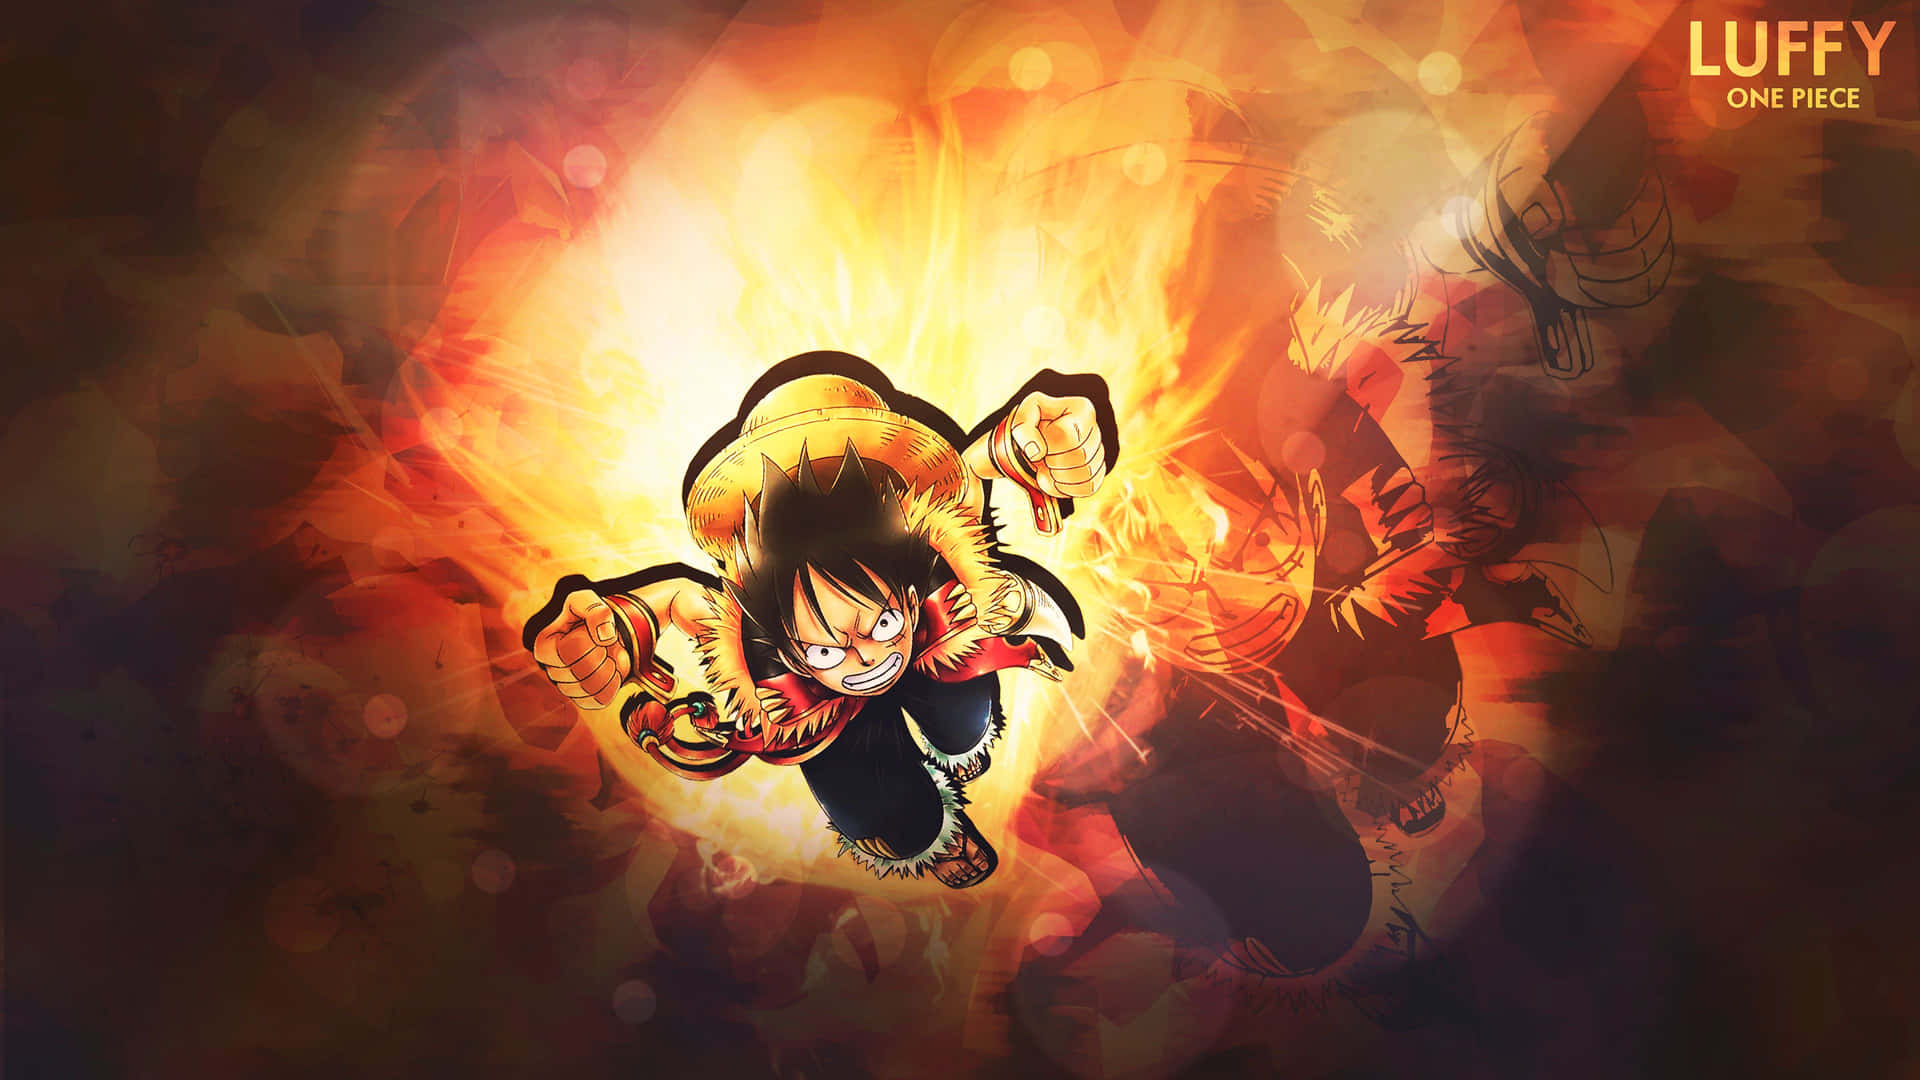 One Piece Luffy Fierce Battle Wallpaper